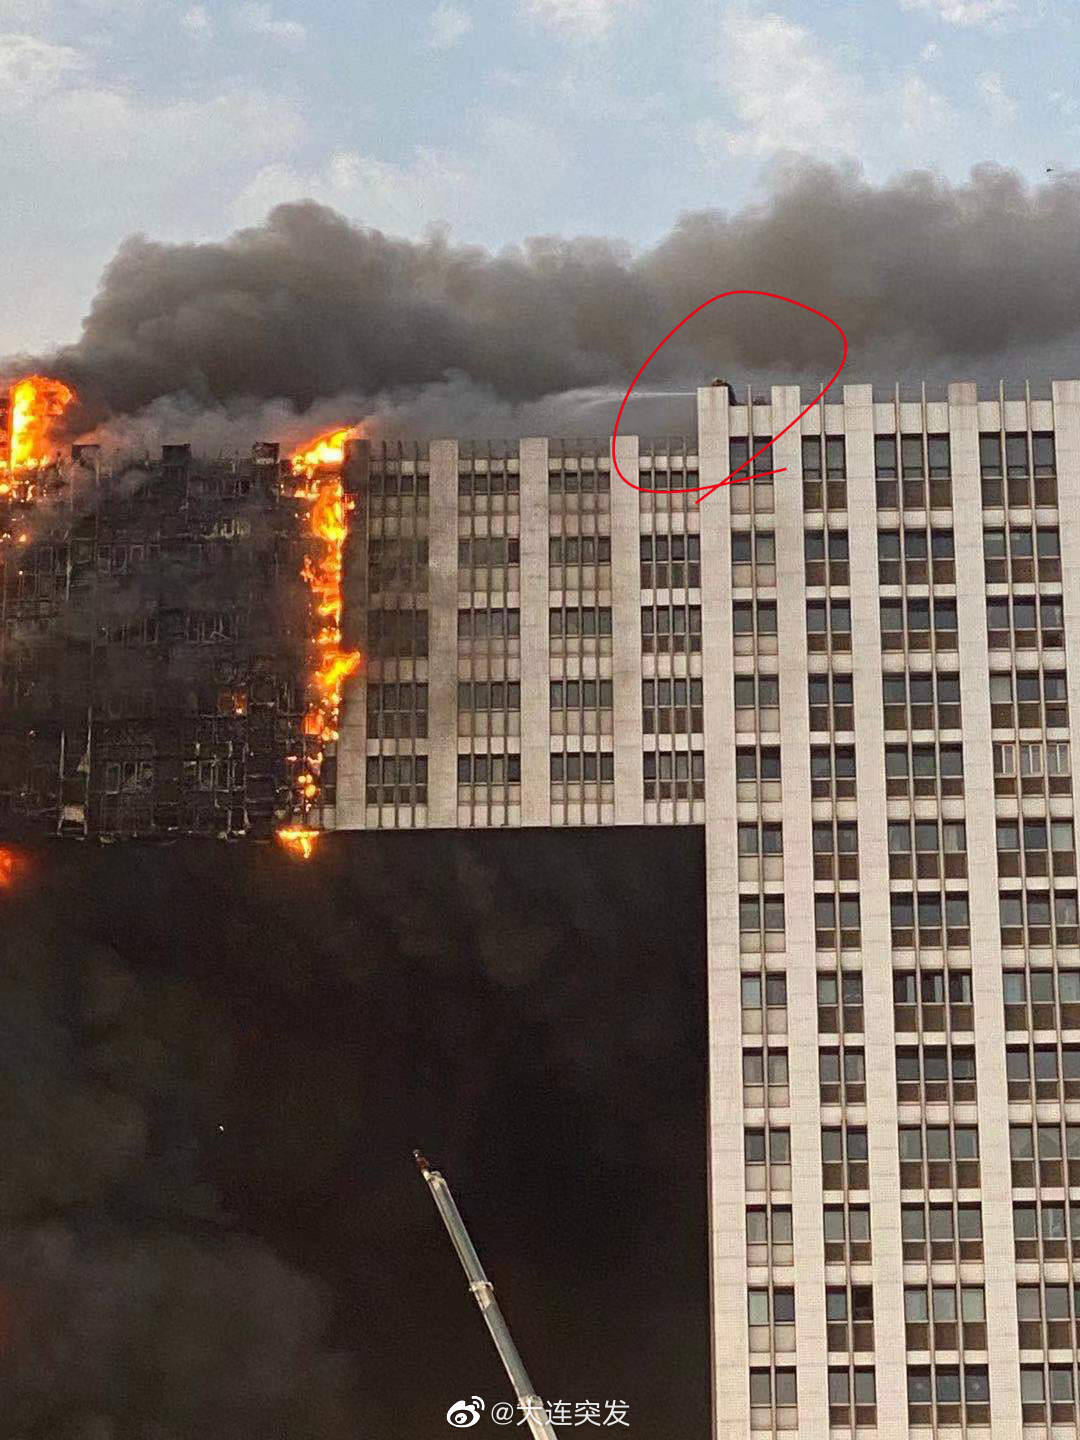 大连凯旋大厦突发大火:68辆消防车366名消防员参与救援,暂无人员伤亡